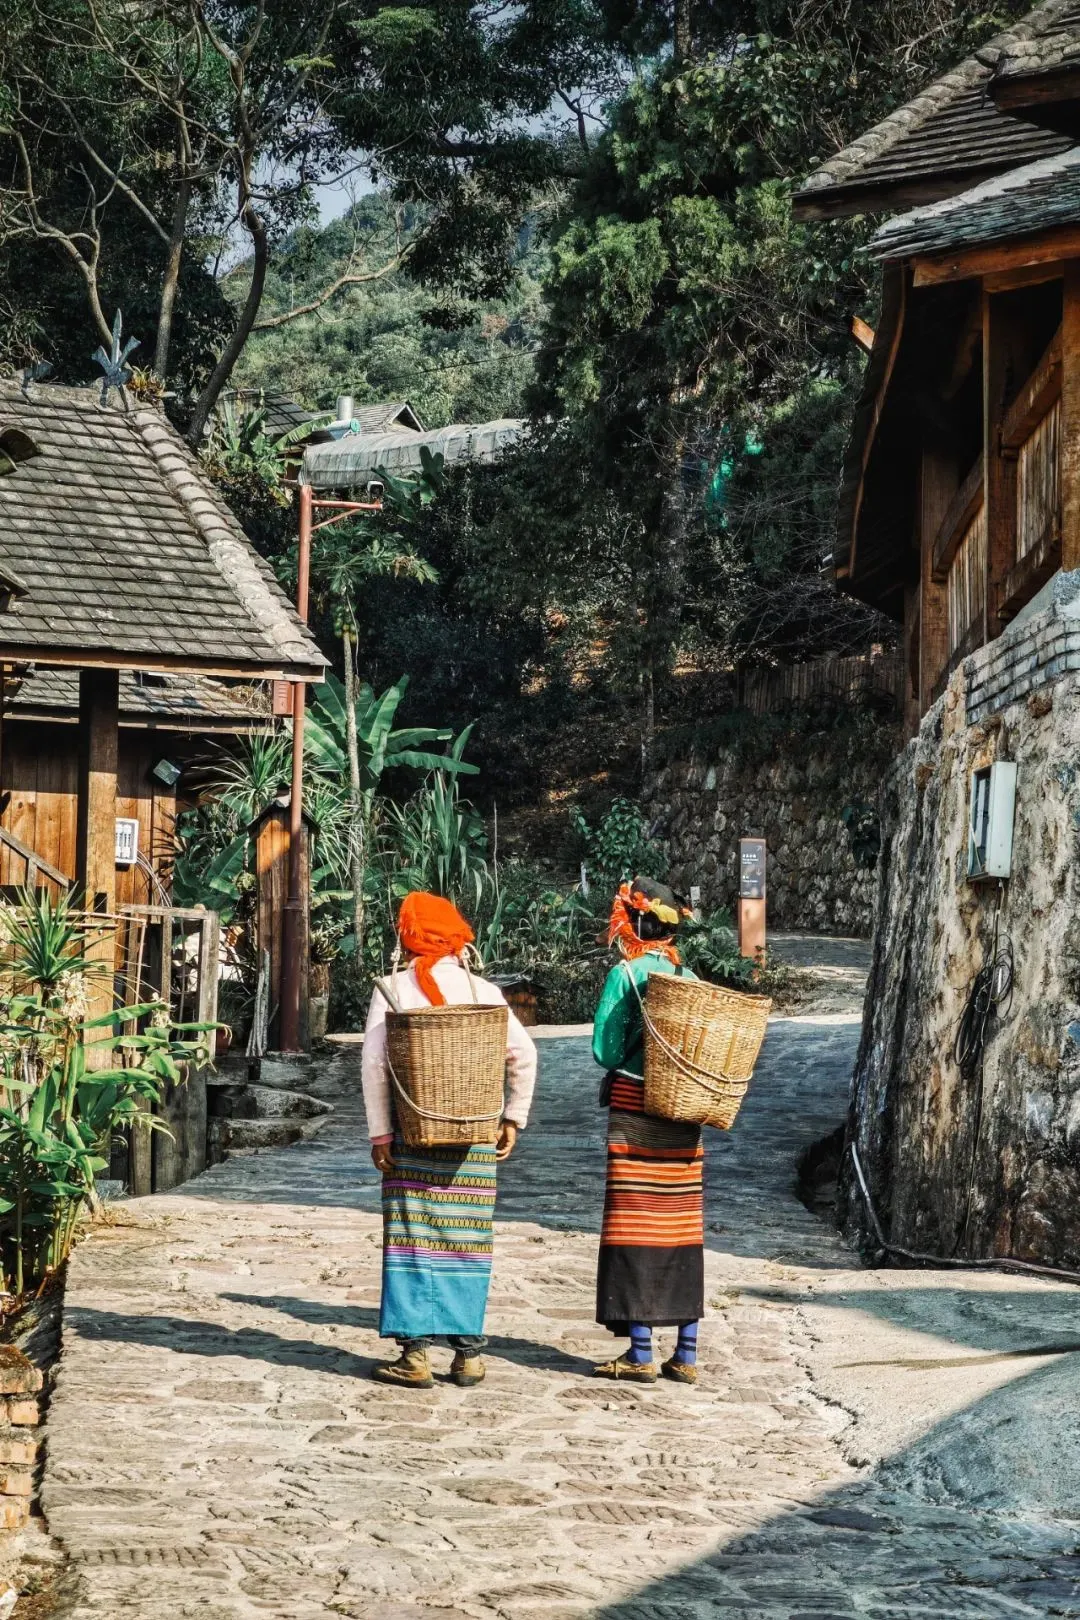 景迈山的村落，保留了最为传统的建筑 摄影/社长的旅行日常